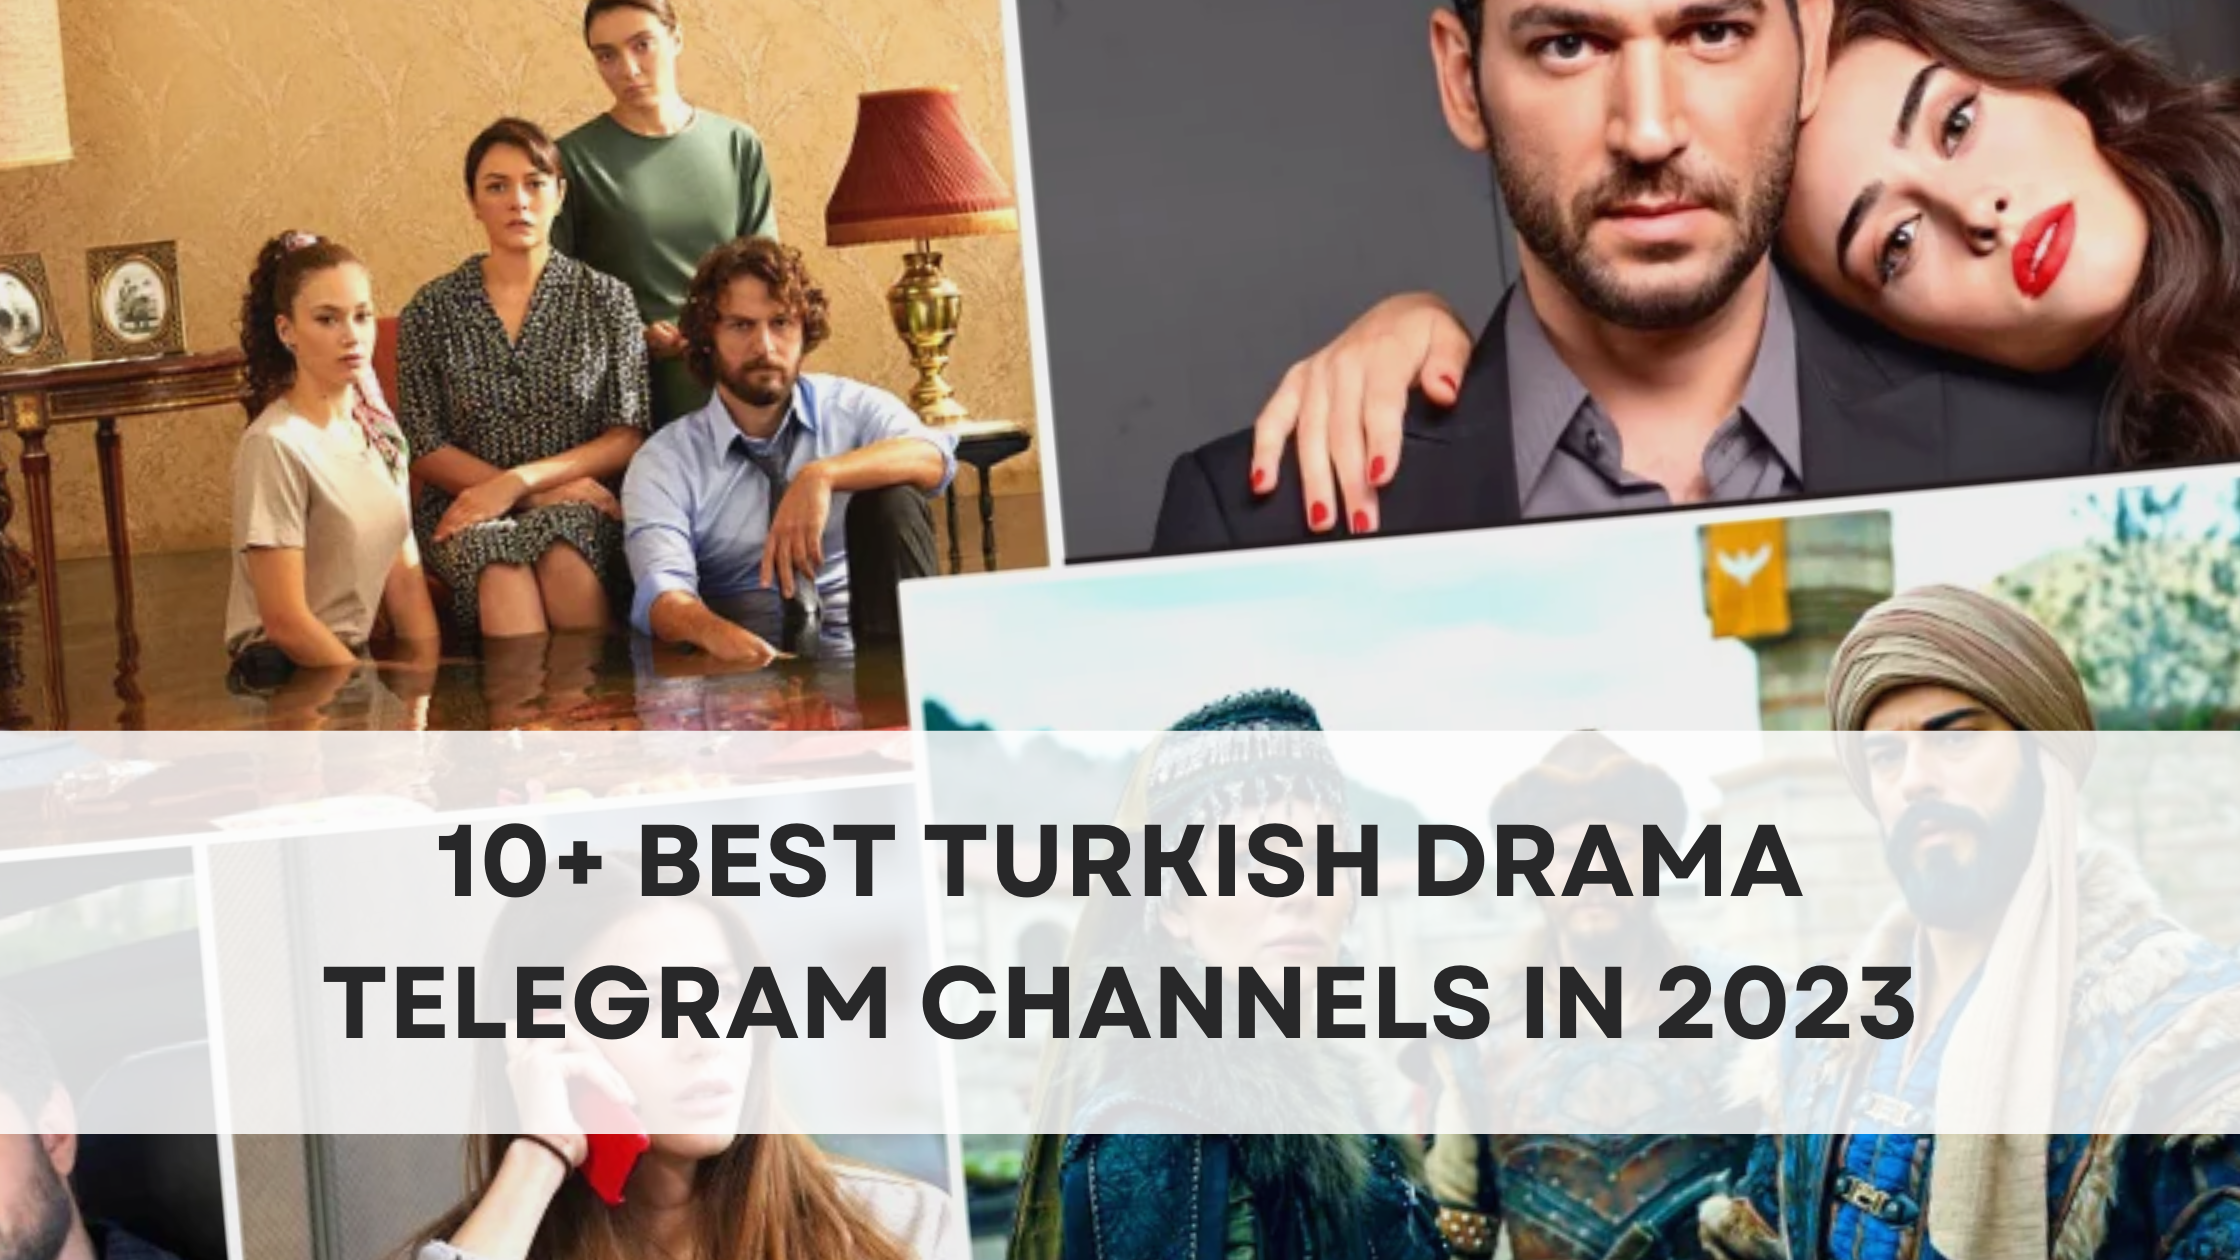 Best Turkish Drama Telegram Channels in 2023